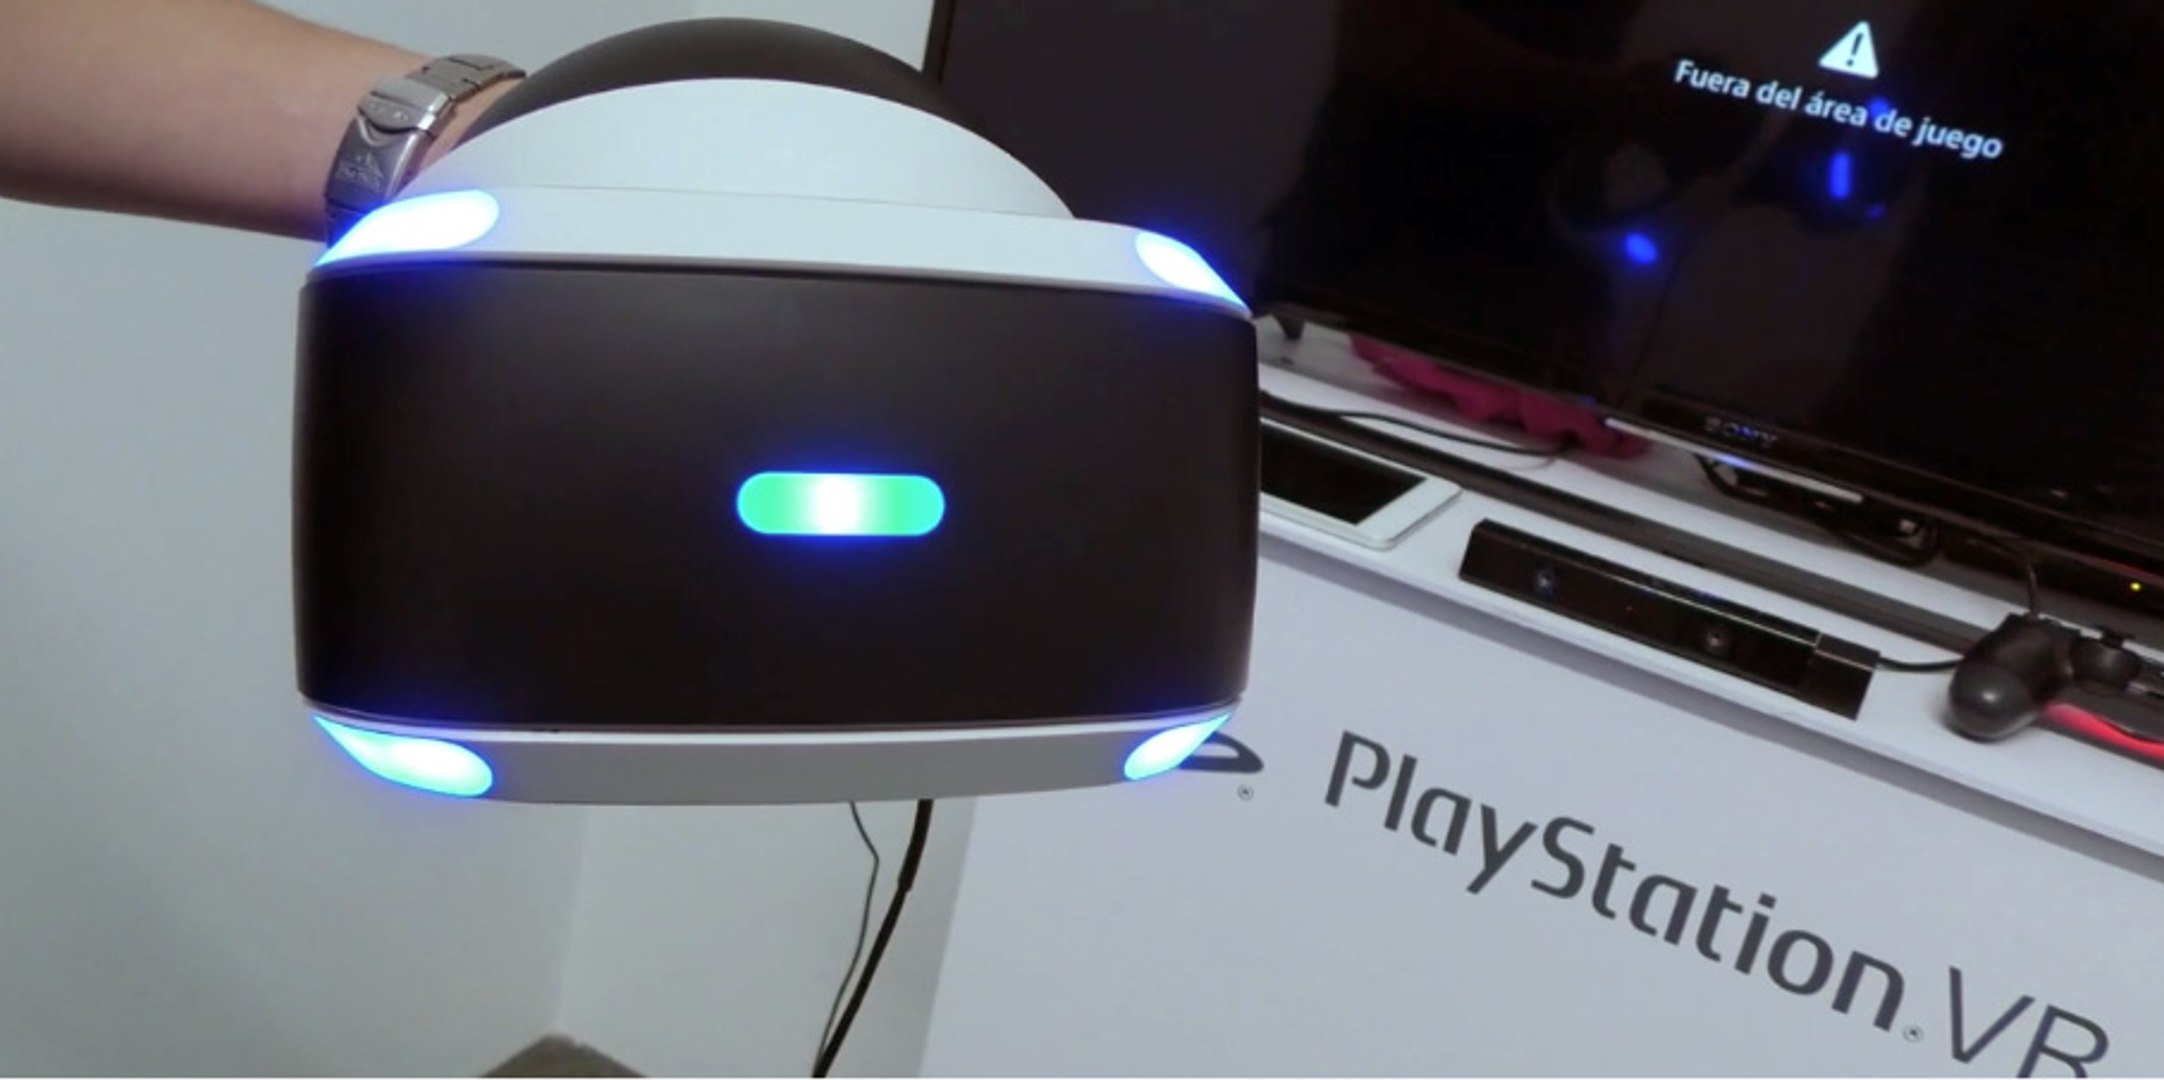 Instalación y cómo conectar Playstation VR - Vídeo Dailymotion